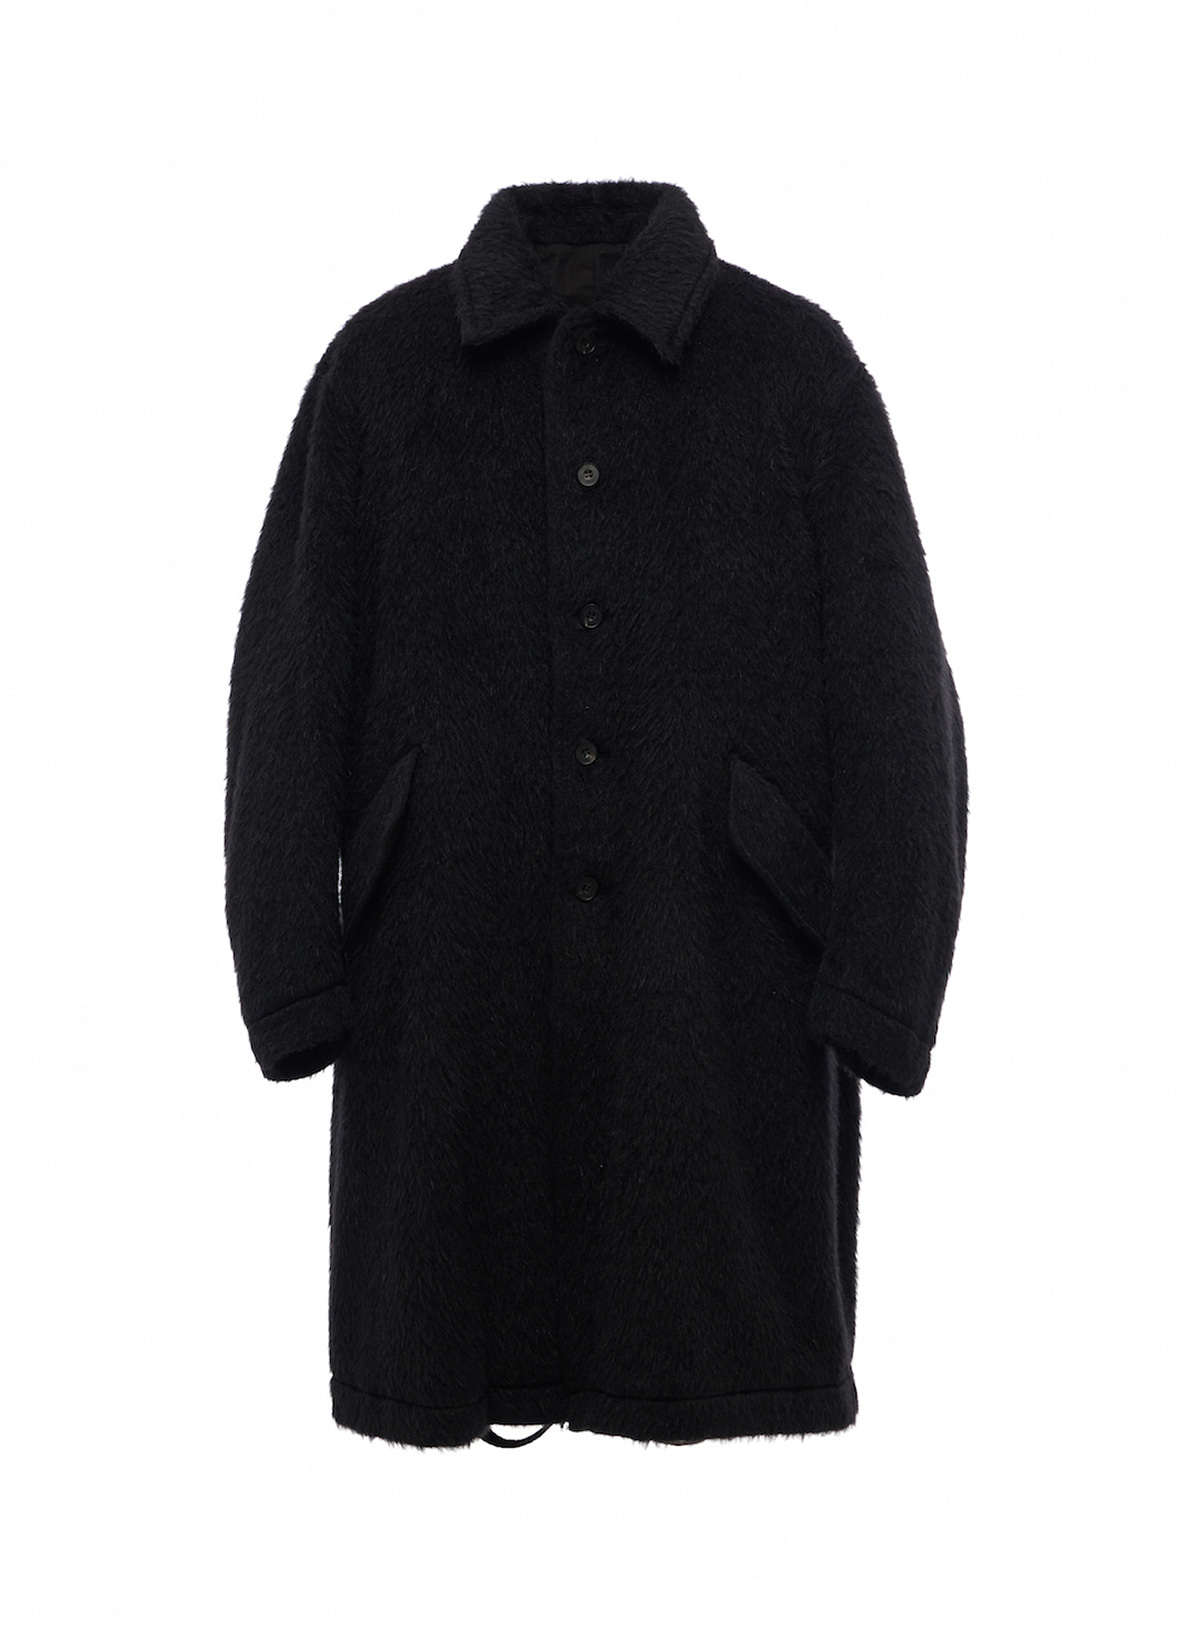 Mohair mac coat​ (Tailor made)﻿